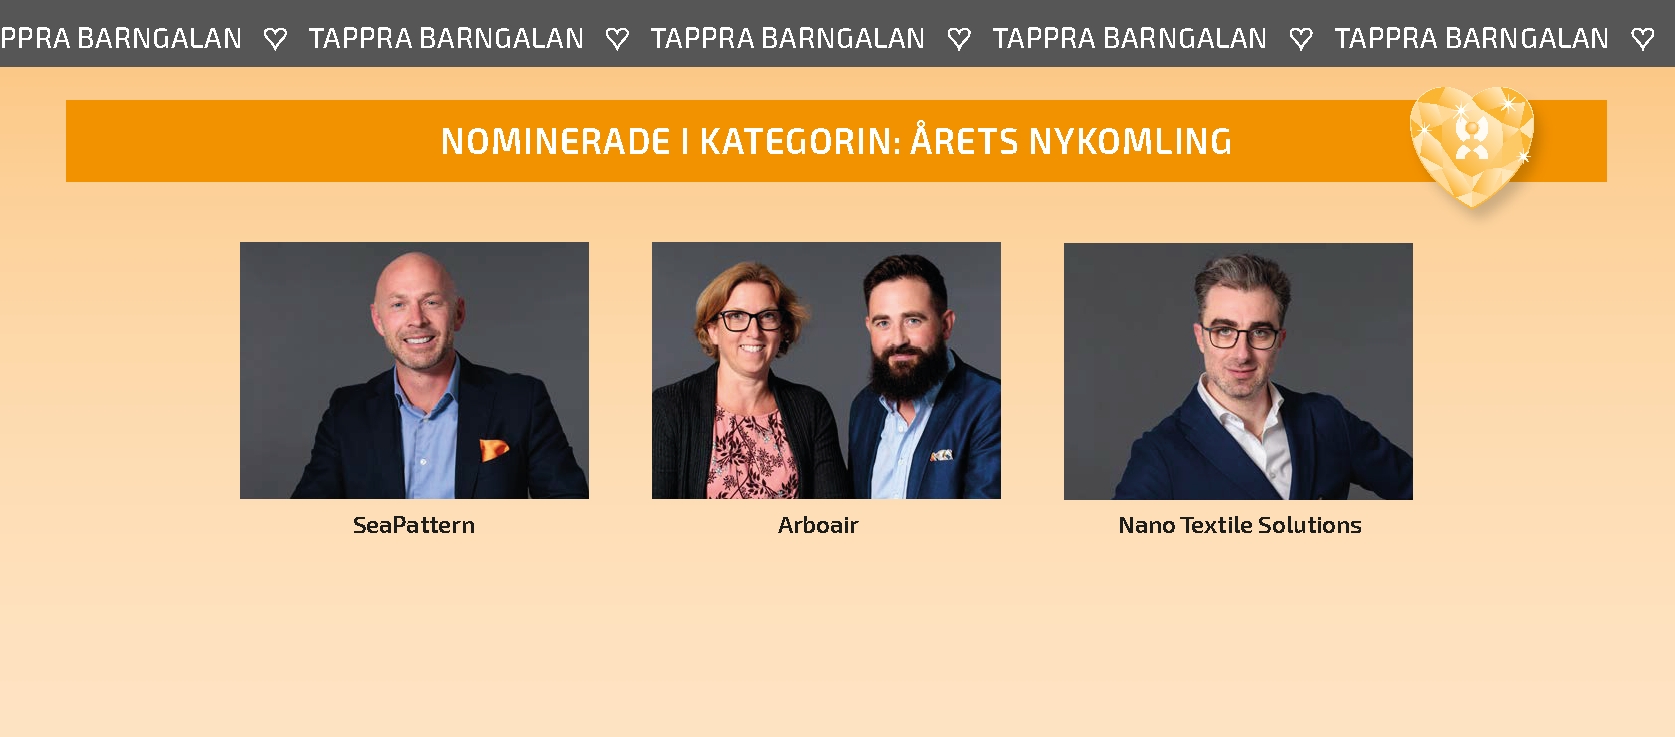 You are currently viewing Affärsstaden presenterar nomineringar till Tappra barngalan